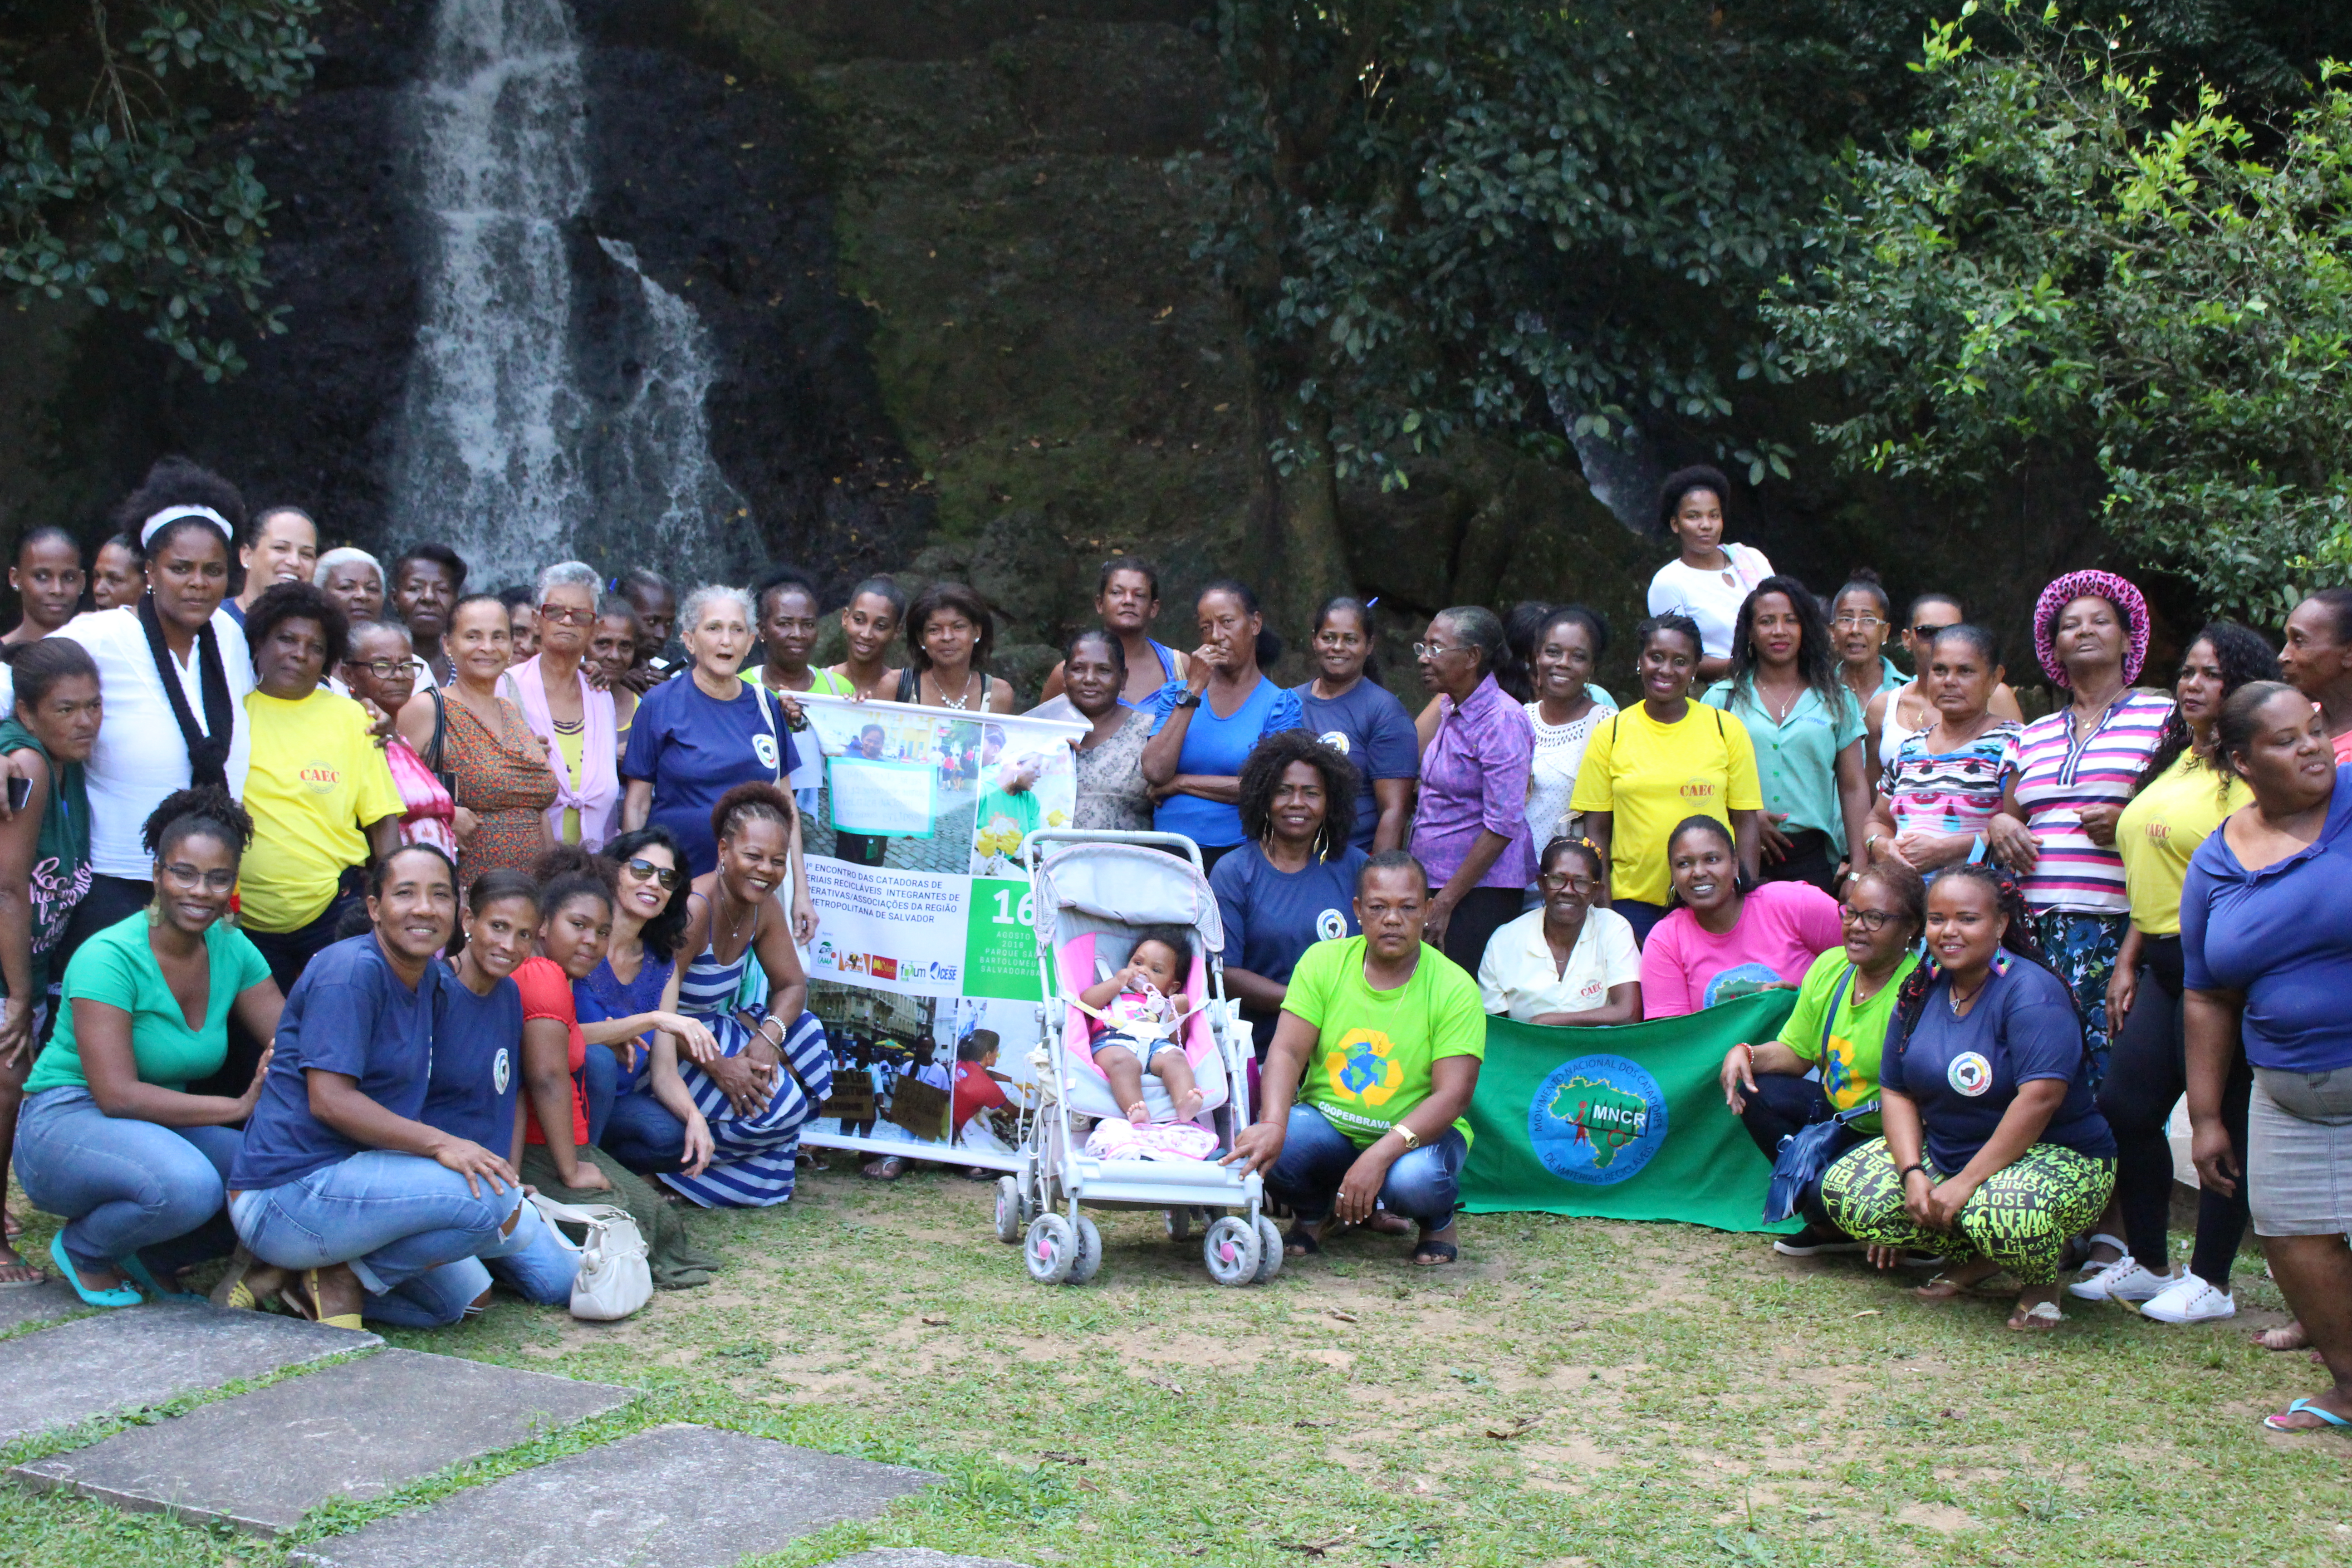 Iº Encontro das Catadoras de Materiais Recicláveis integrantes de Cooperativas/Associações da Região Metropolitana de Salvador - RMS.